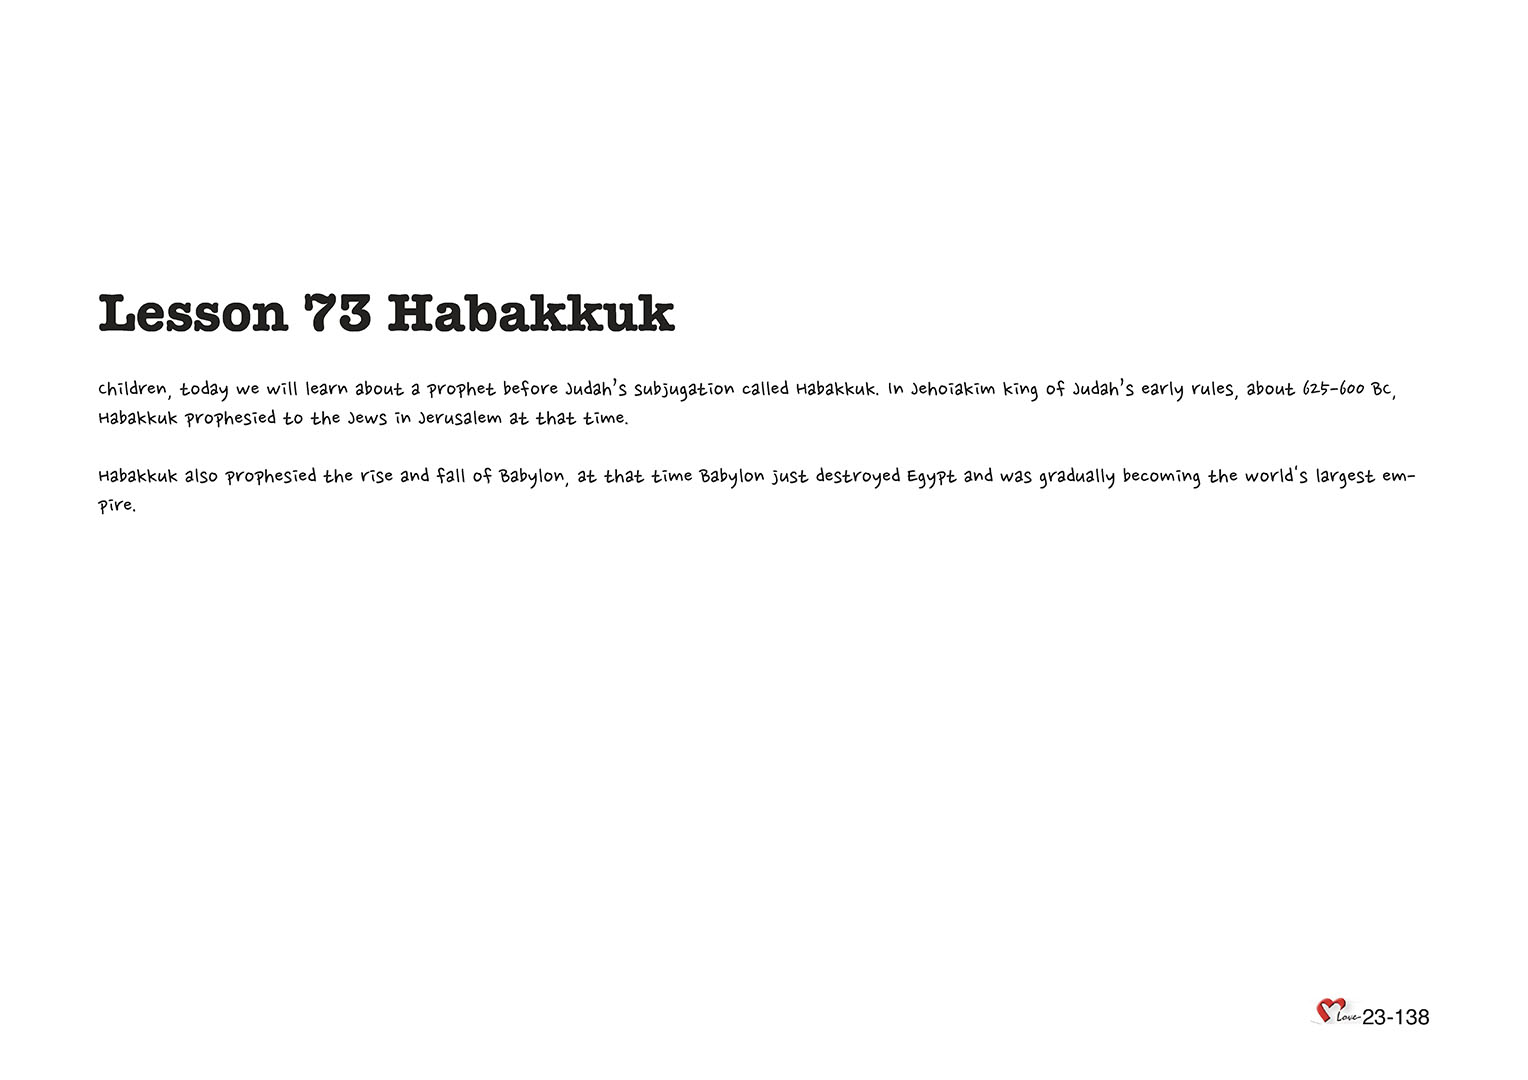 Chapter 23 - Lesson 73 - Habakkuk